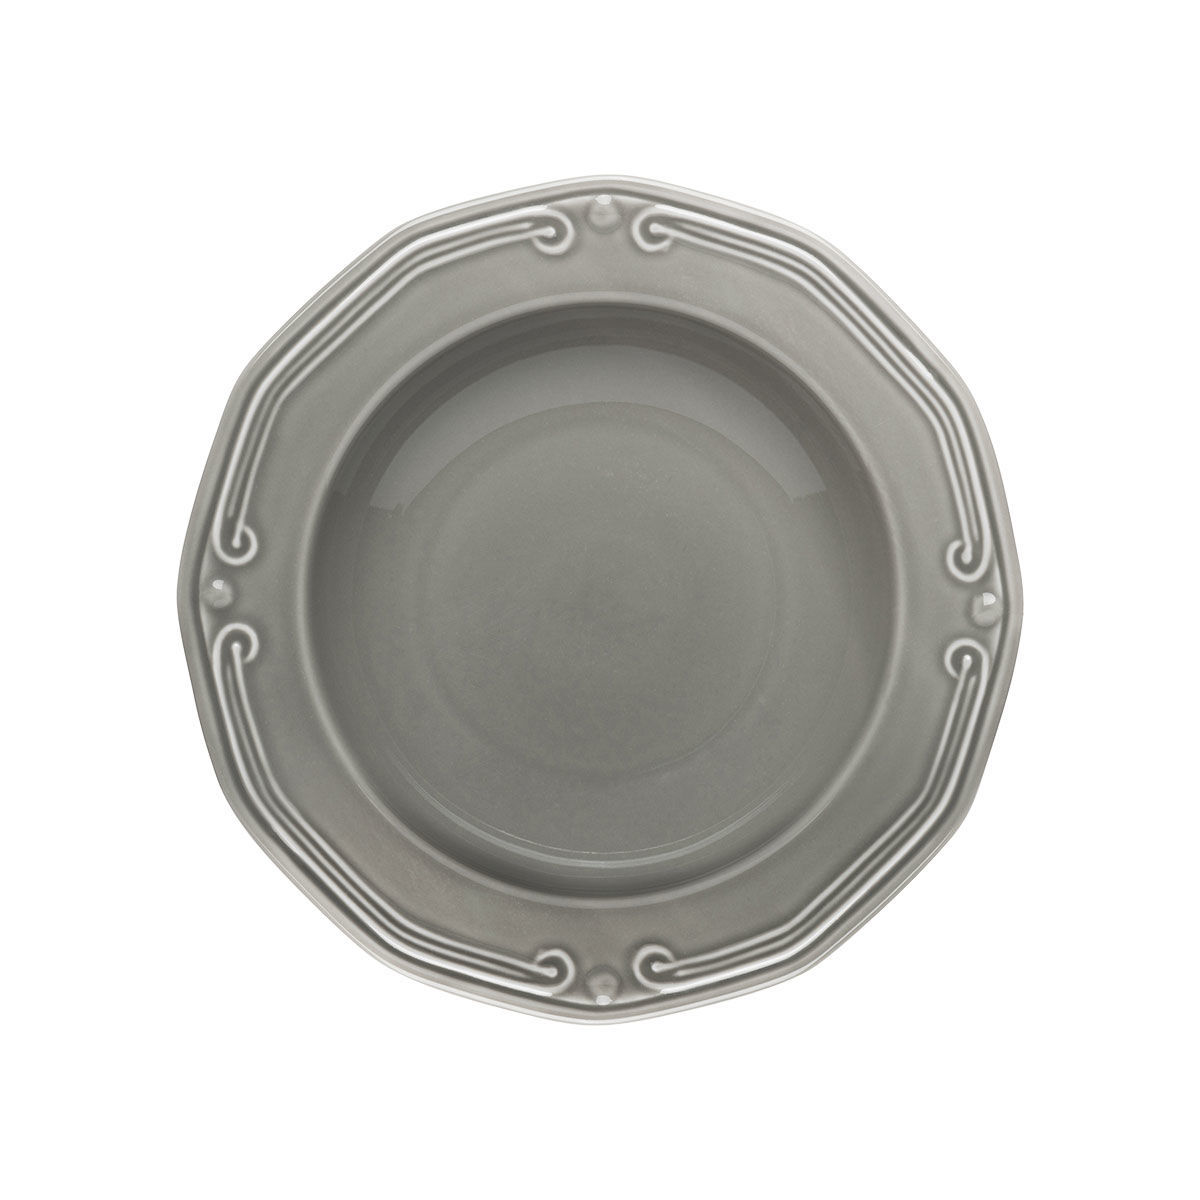 Πιάτο Βαθύ Πορσελάνης Ανάγλυφο Φ23cm Athénée Grey Estia 01-13677 - 1